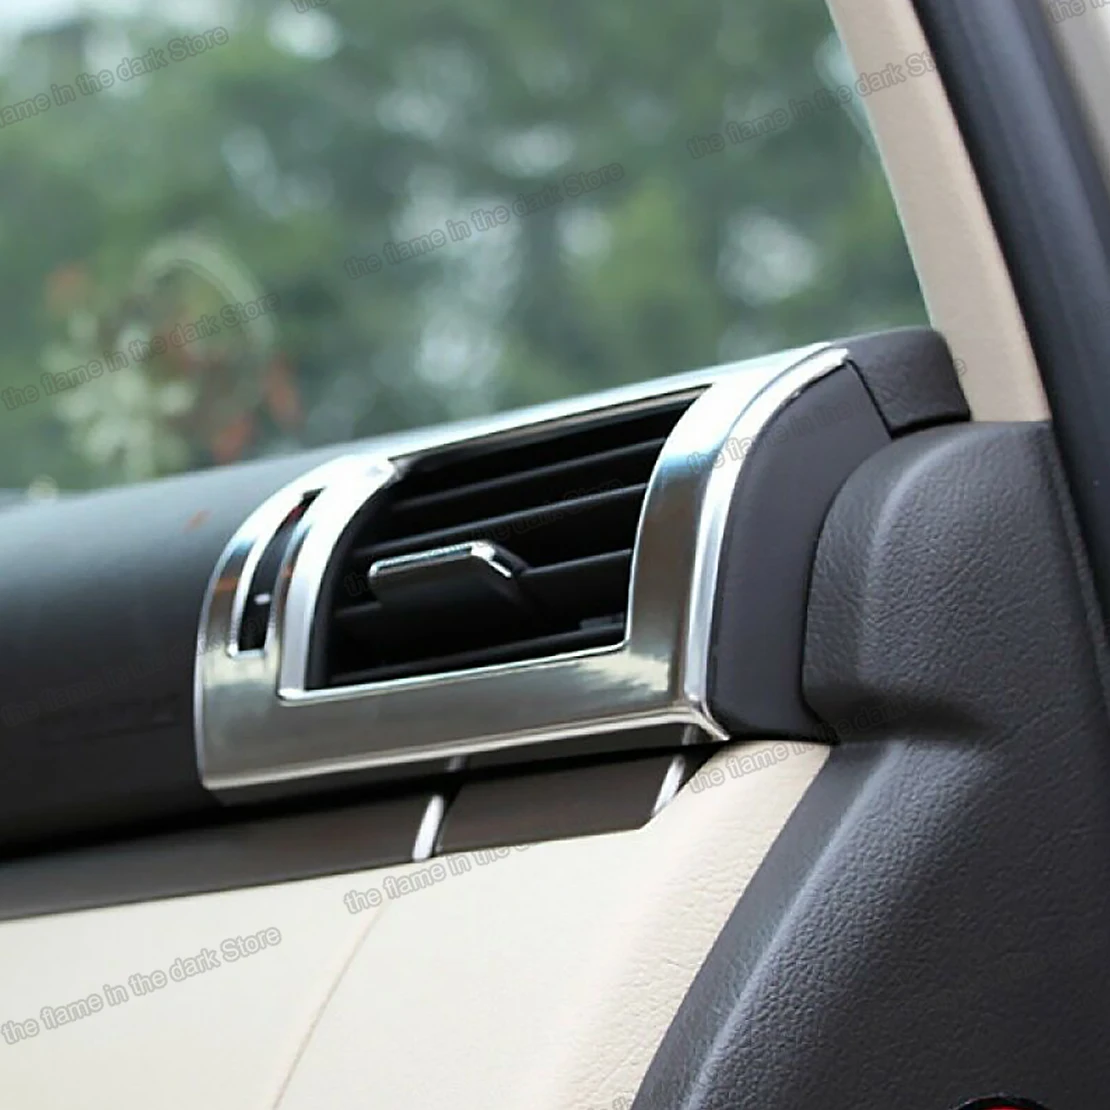 

matt silver abs car dashboard vent trims for lexus rx rx270 rx350 rx450h 2010 2009 2011 2012 2013 2014 2015 air conditioning